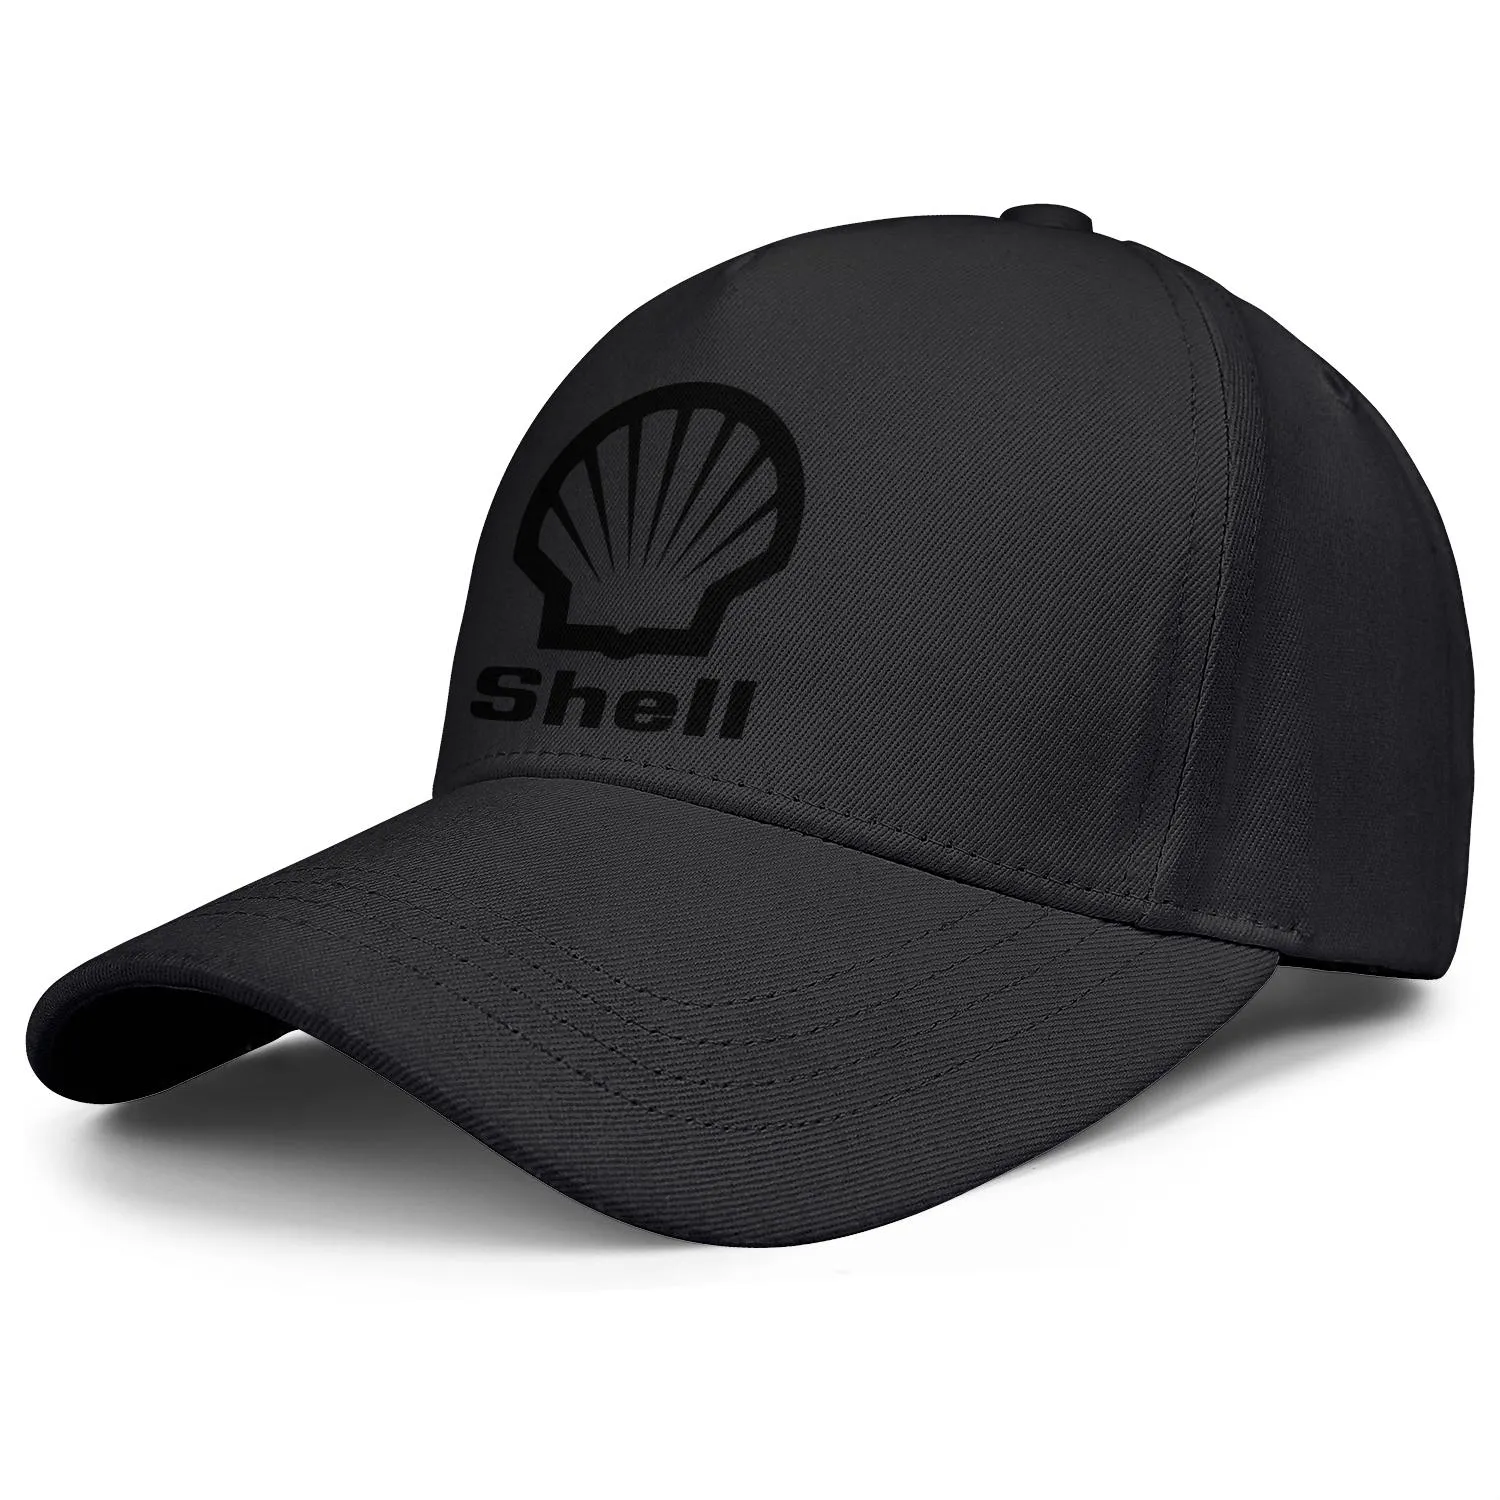 Shell Benzin benzin İstasyonu Logo Erkek ve Kadınlar Ayarlanabilir Kamyoner Kapak Takılmış Vintage Sevimli Beyzbolhatlar Bulucu Basol Symbo4496249